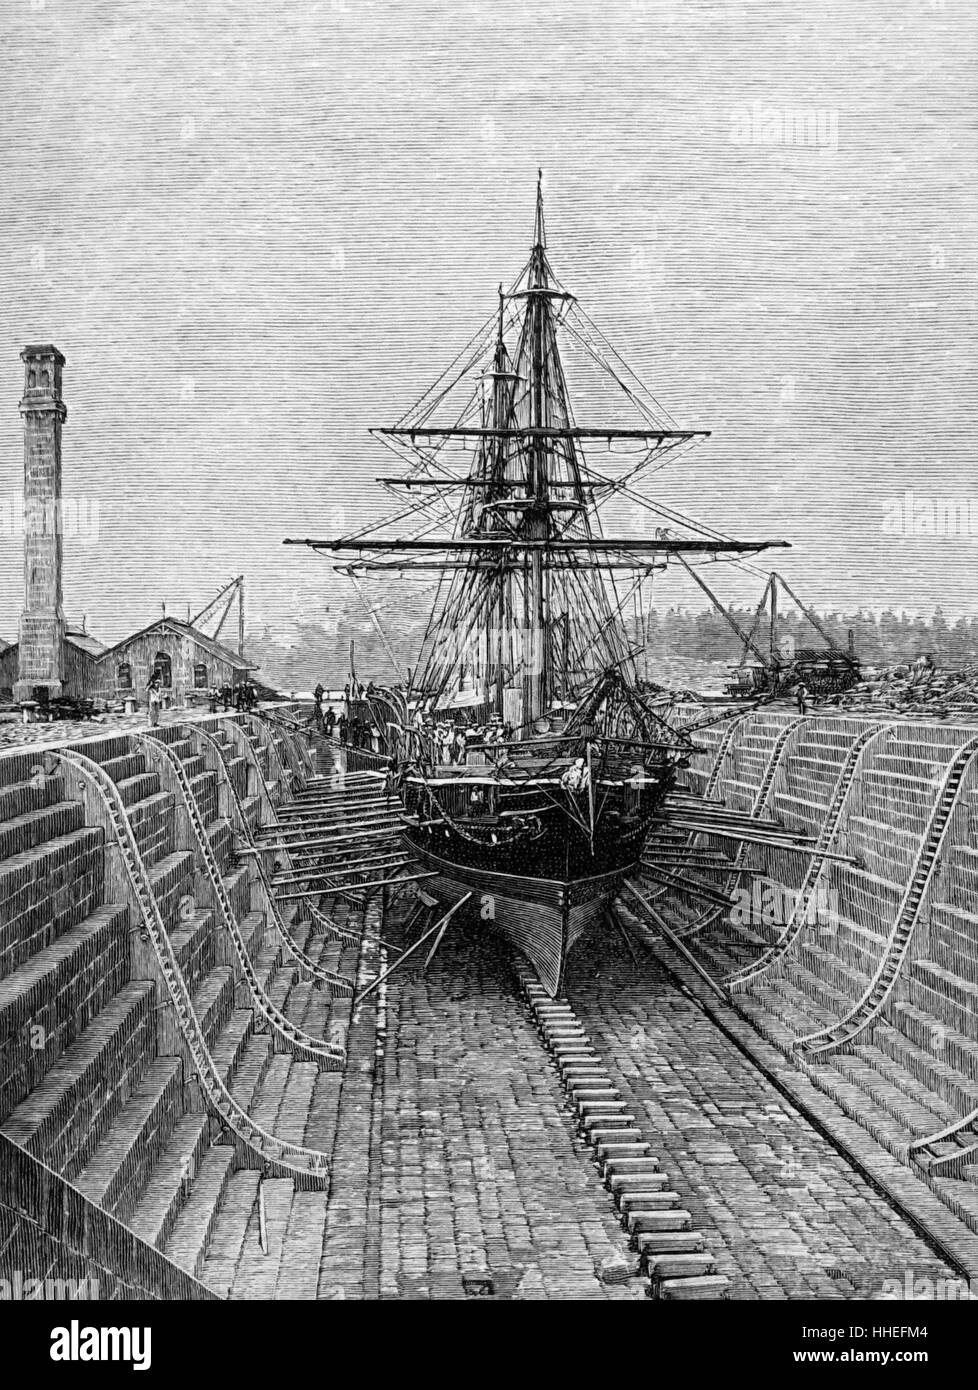 Illustration de la cale sèche au Victoria Docks. En date du 19e siècle Banque D'Images